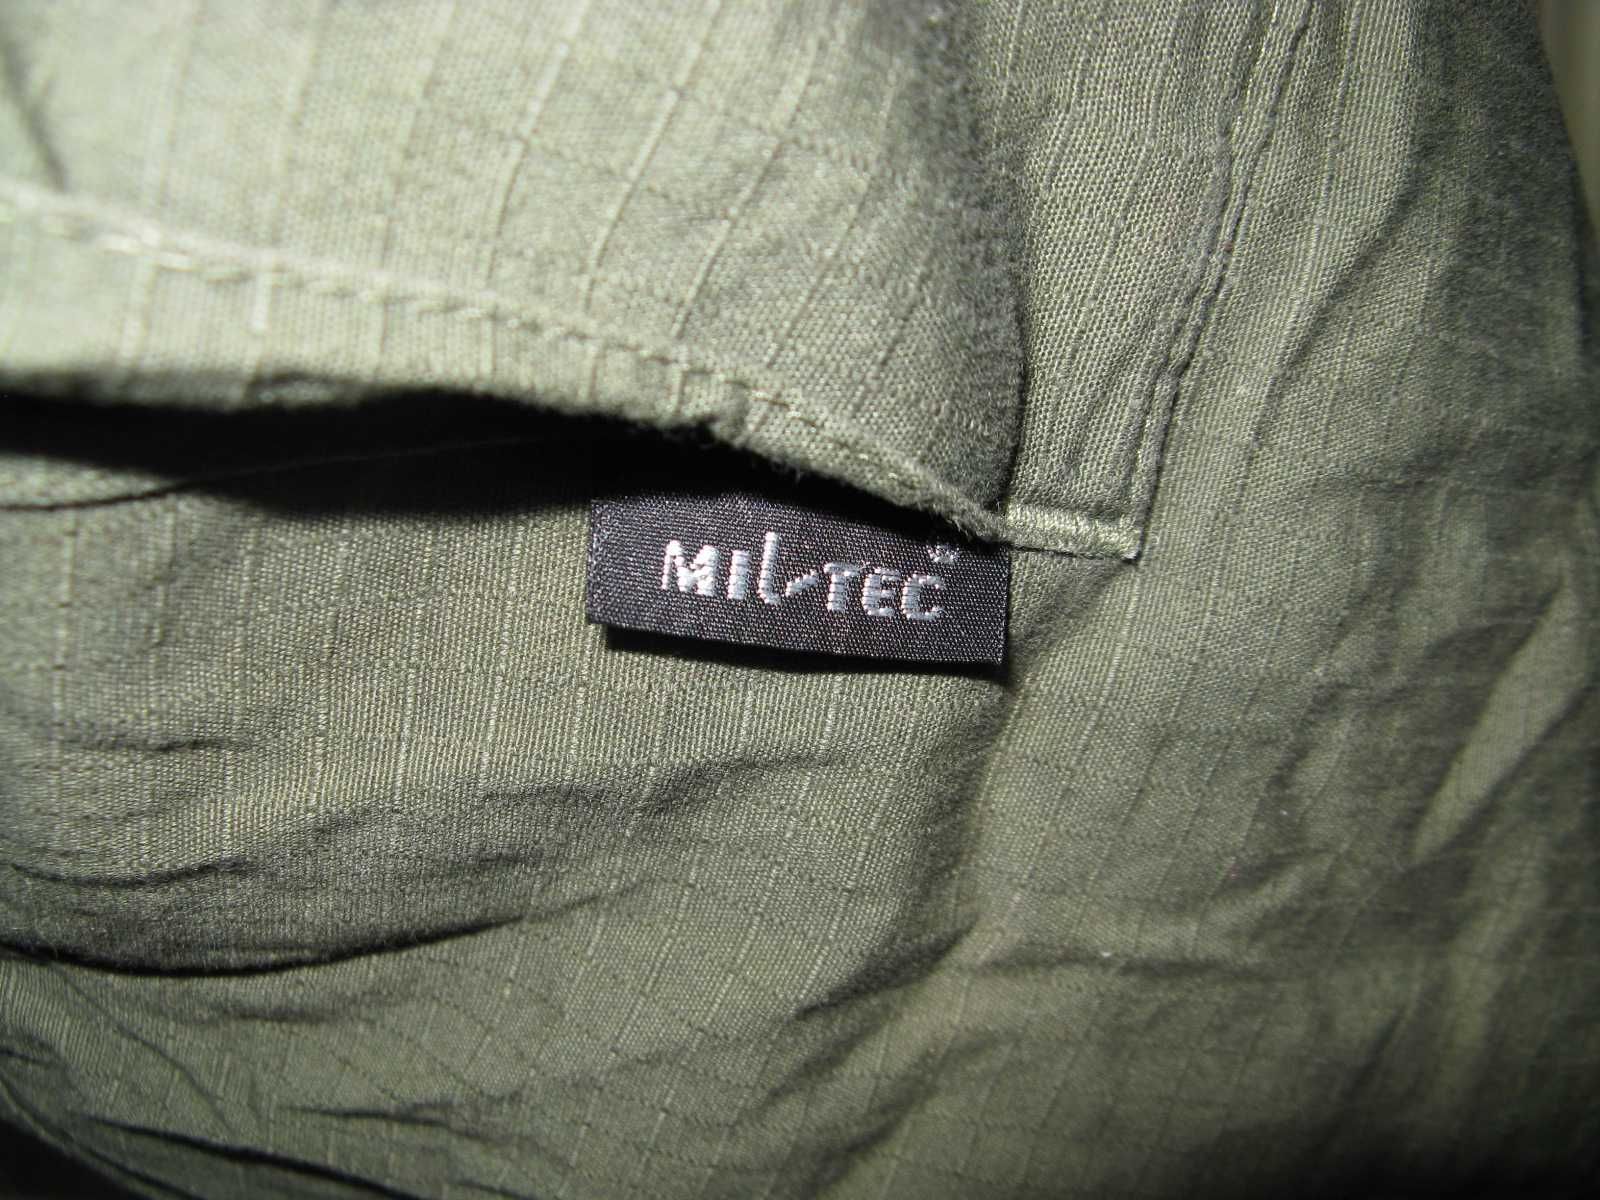 Vand pantaloni MIL - Tec si tricou militar Bundeswher